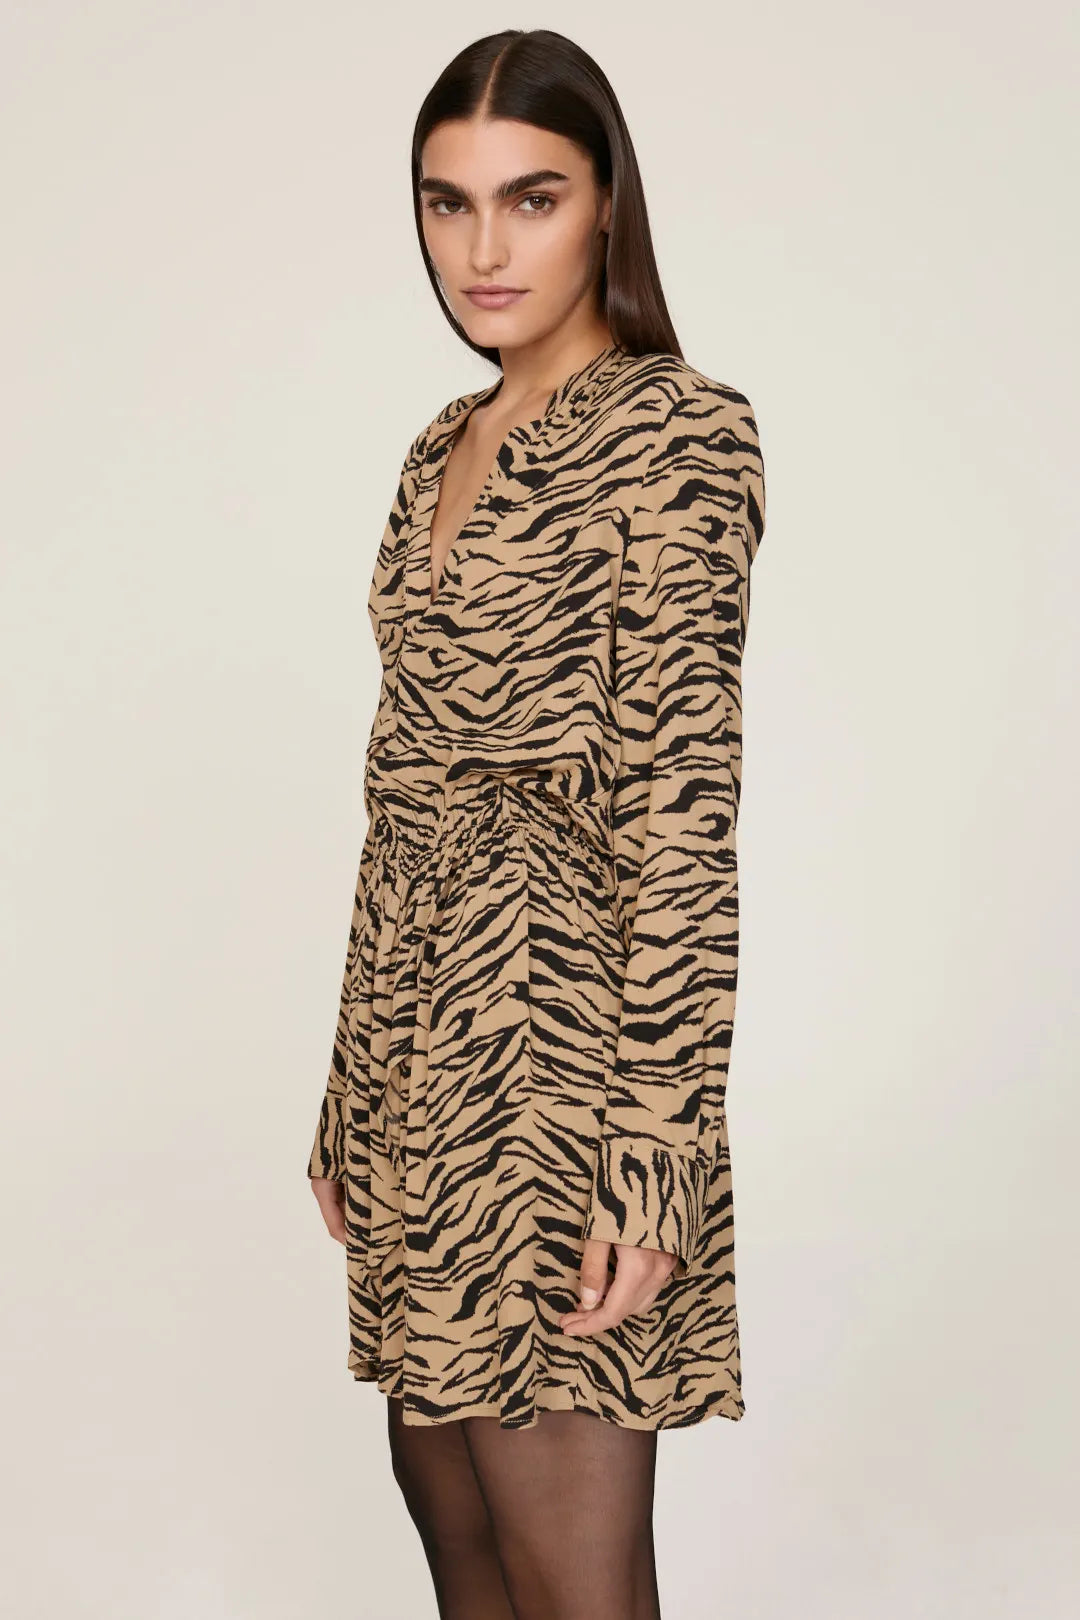 Zadig & Voltaire Rinka Tiger Dress